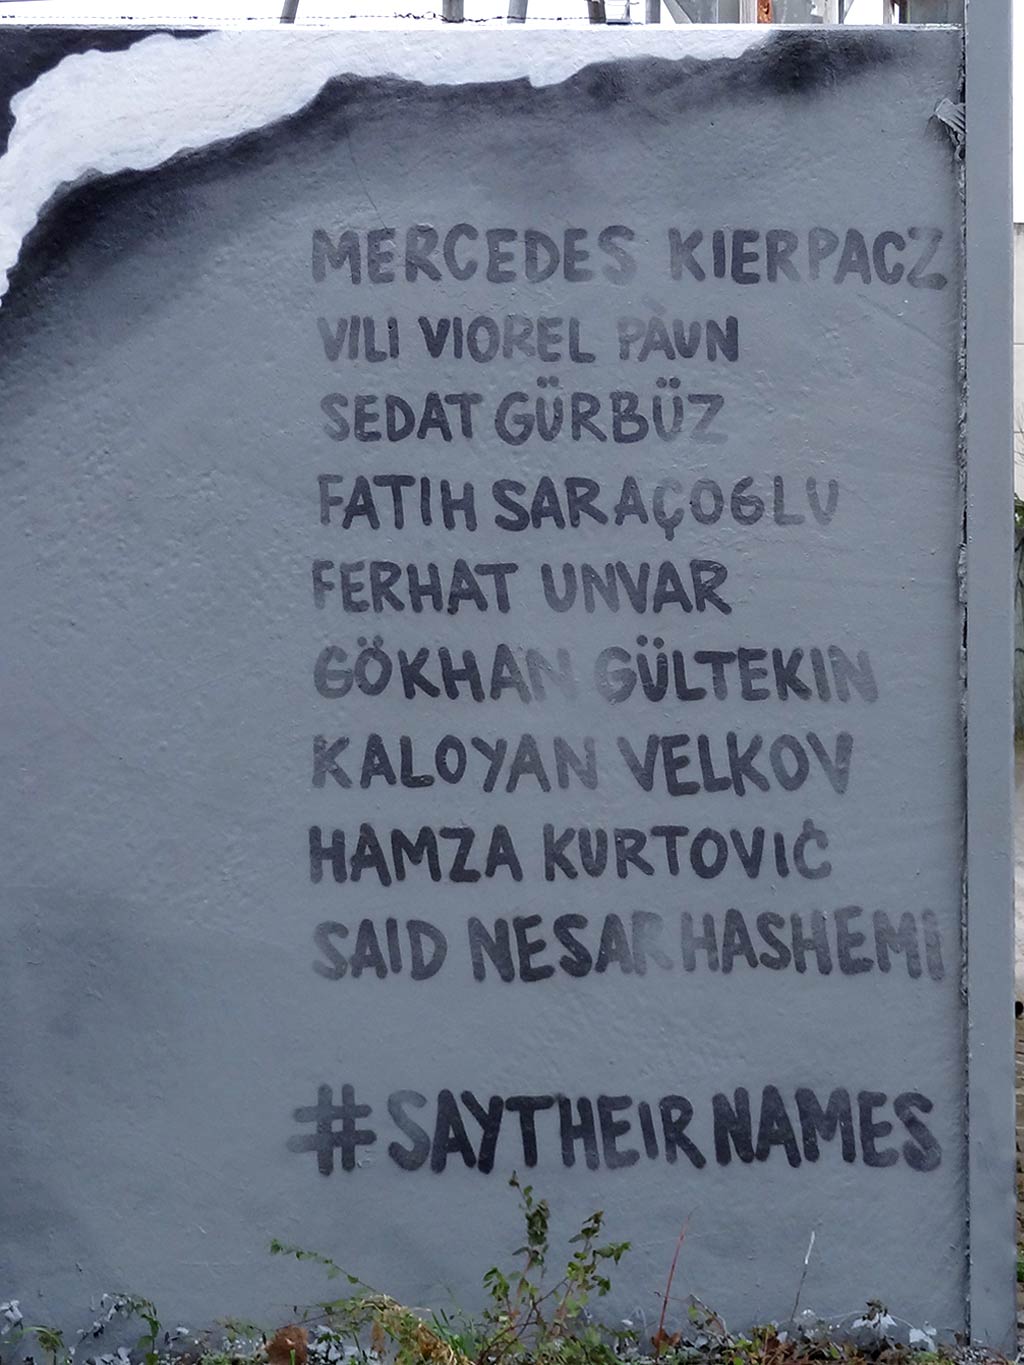 Wandbild in Frankfurt-Höchst: #Saytheirnames und den Namen der Opfer von Hanau